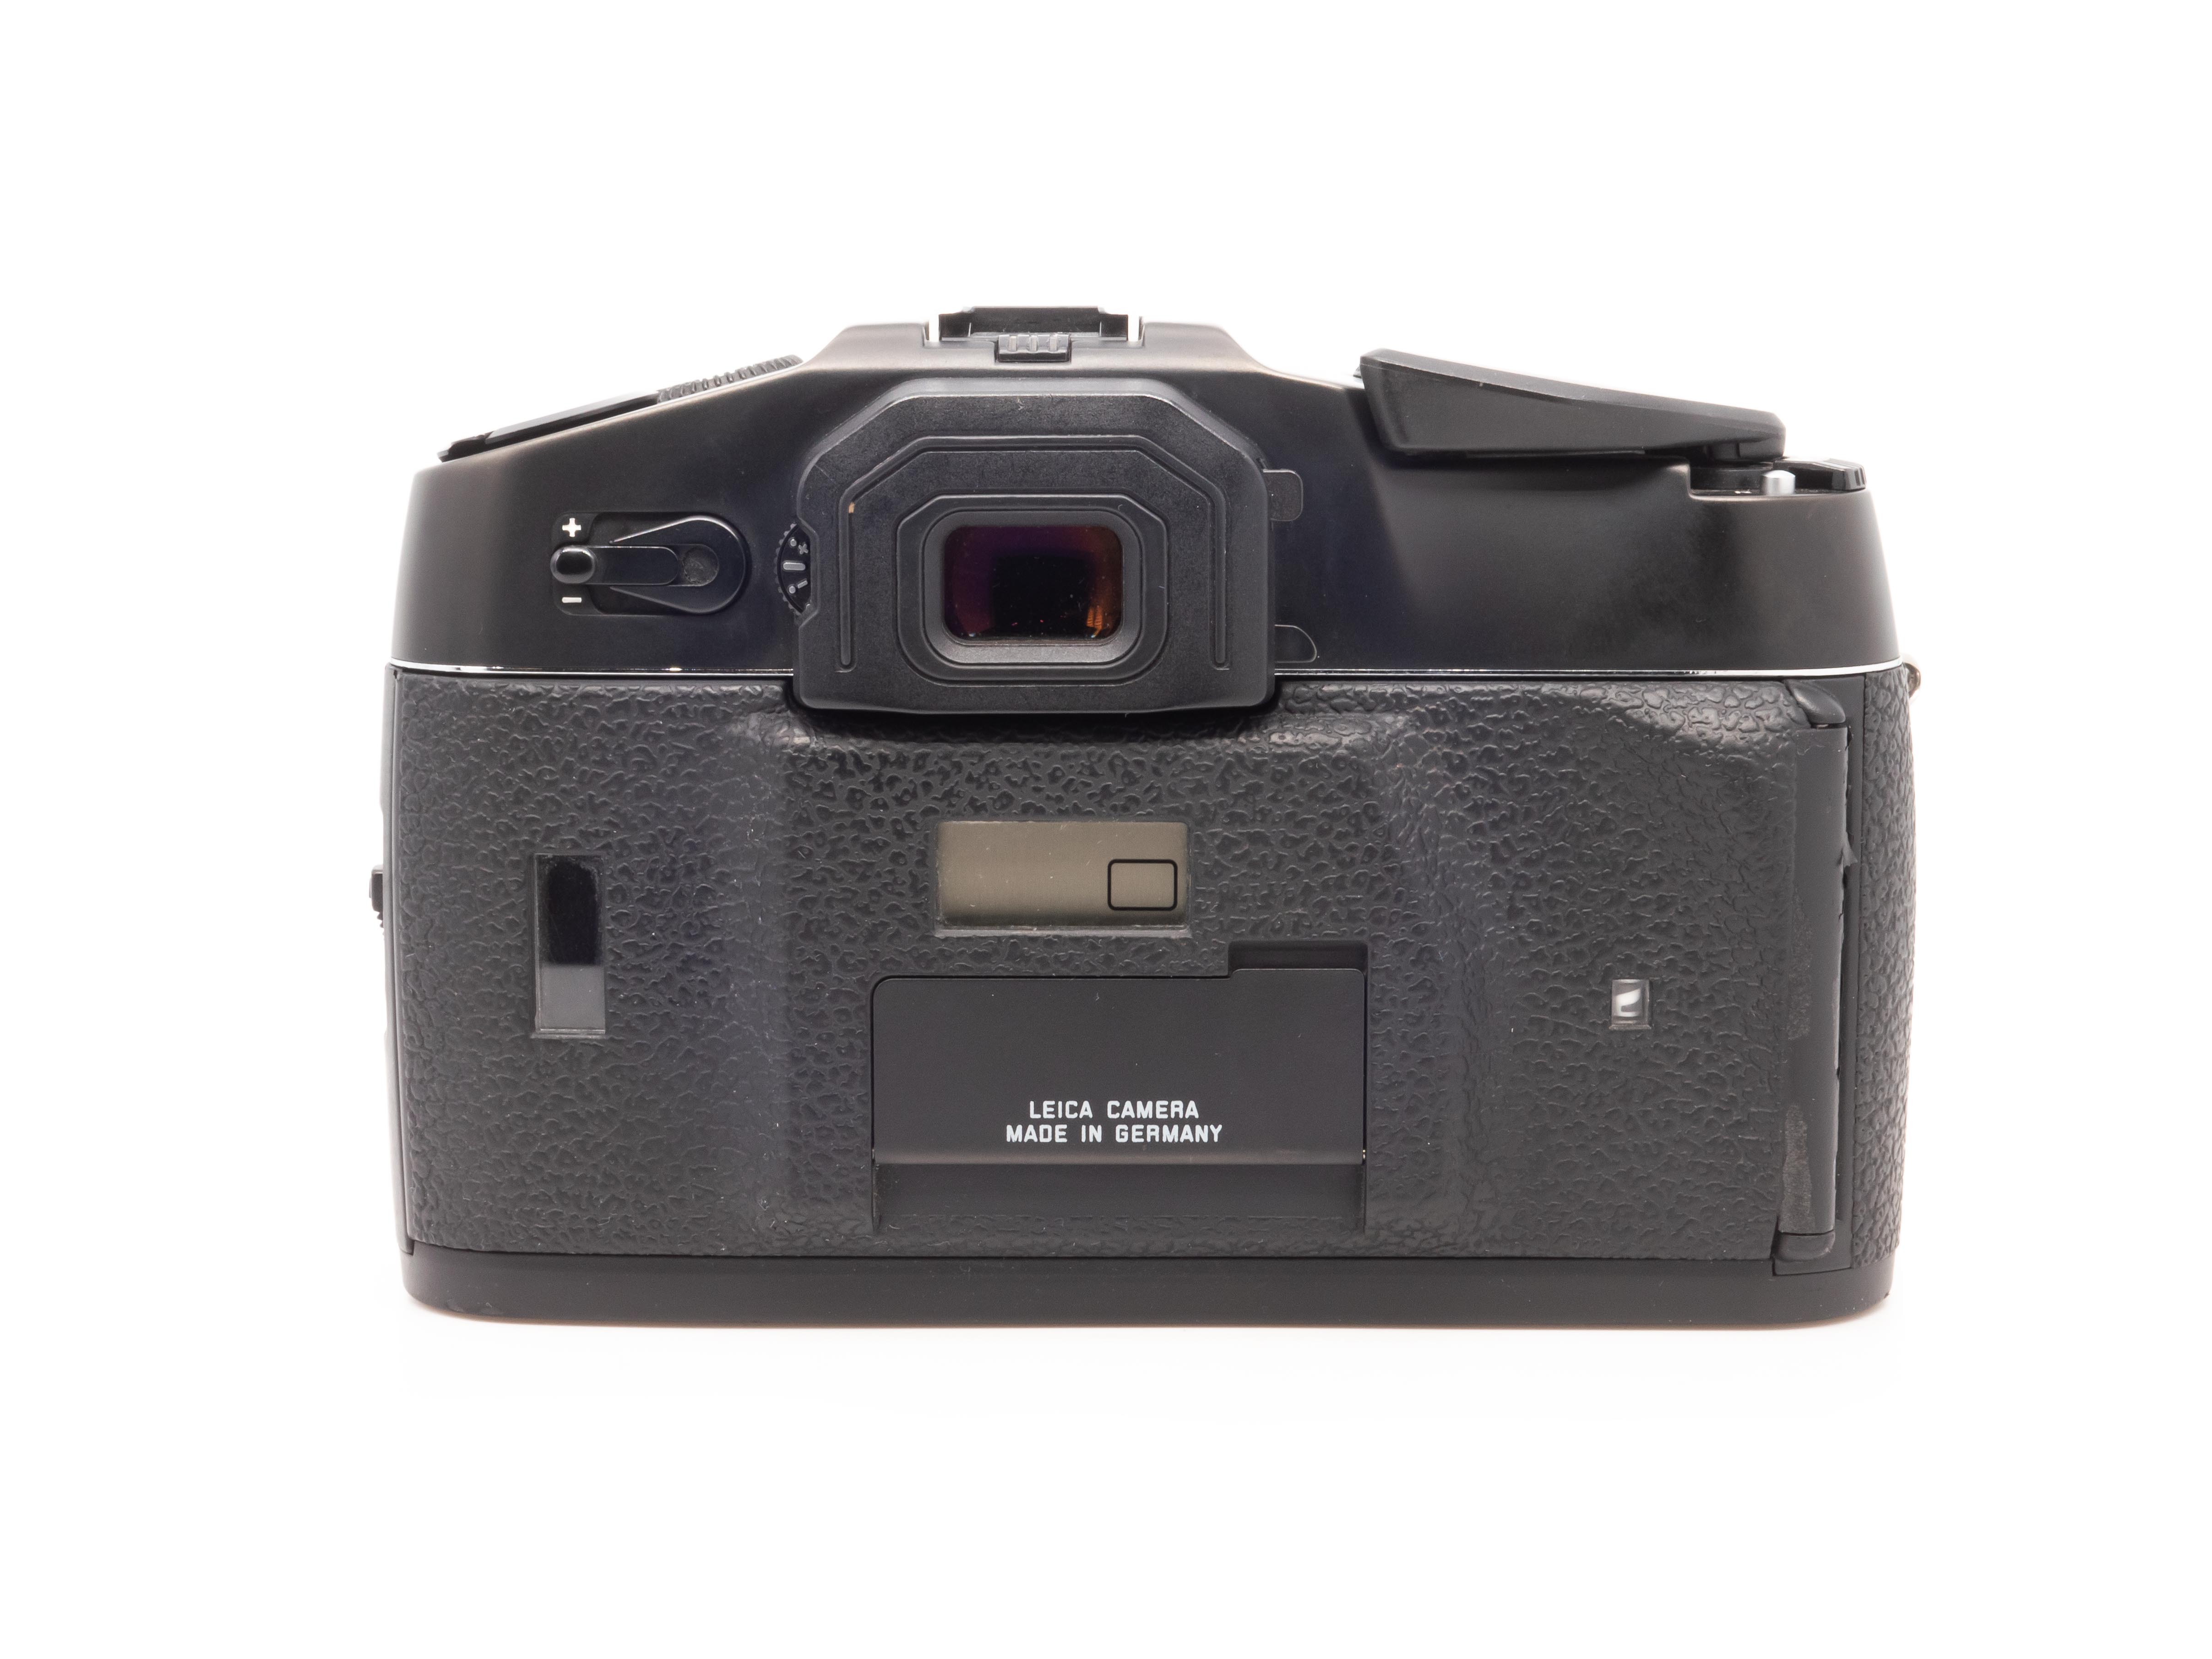 Leica R8 Gehäuse schwarz